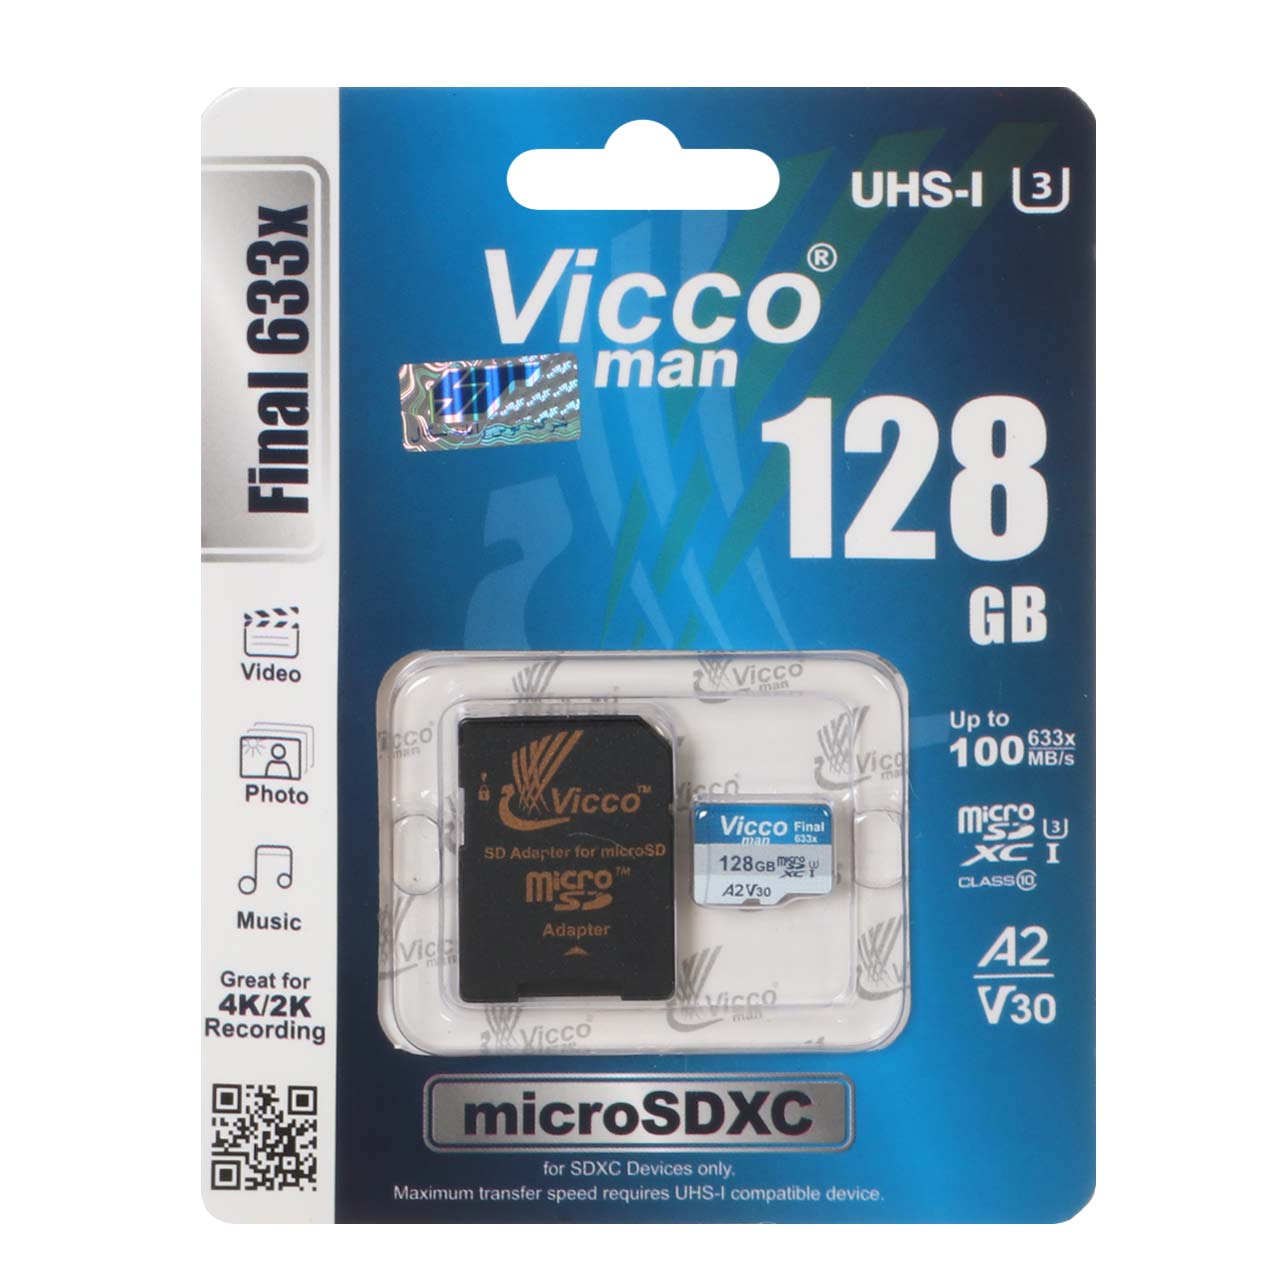 Vicco man Final 633X microSDXC & adapter UHS-I U3 Class 10-100MB/s -128GB (گارانتی مادام‌العمر رایانه نوین سگال